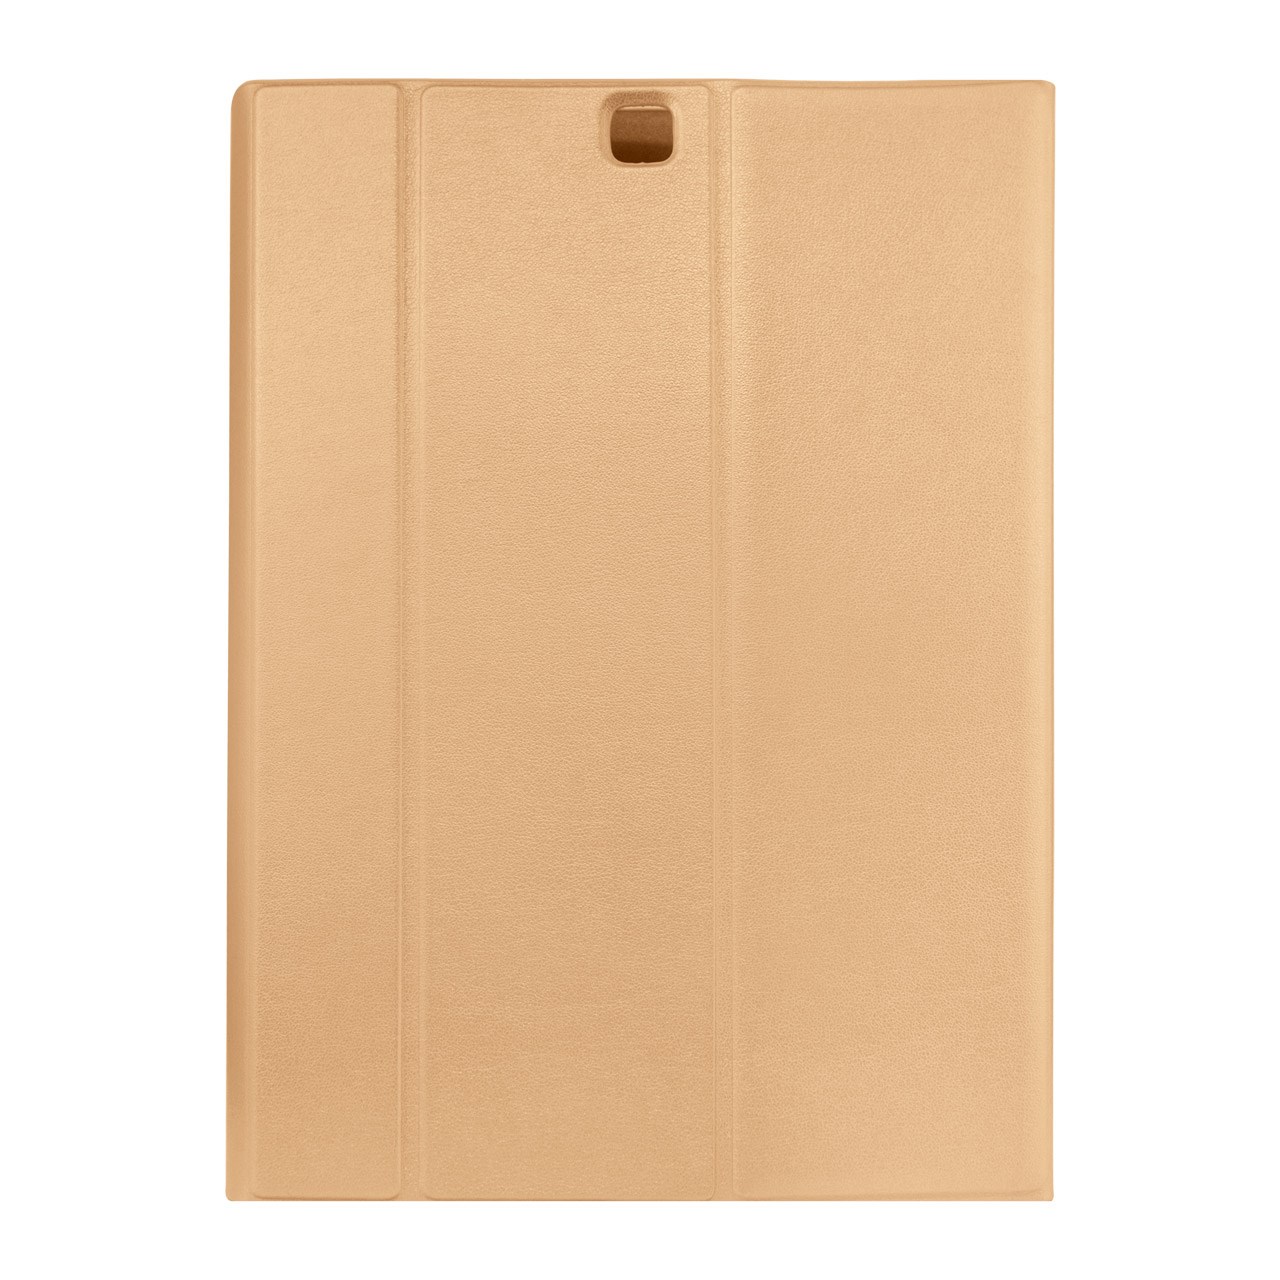 کیف کلاسوری مدل Book Cover مناسب برای تبلت سامسونگ گلکسی Tab S2 9.7